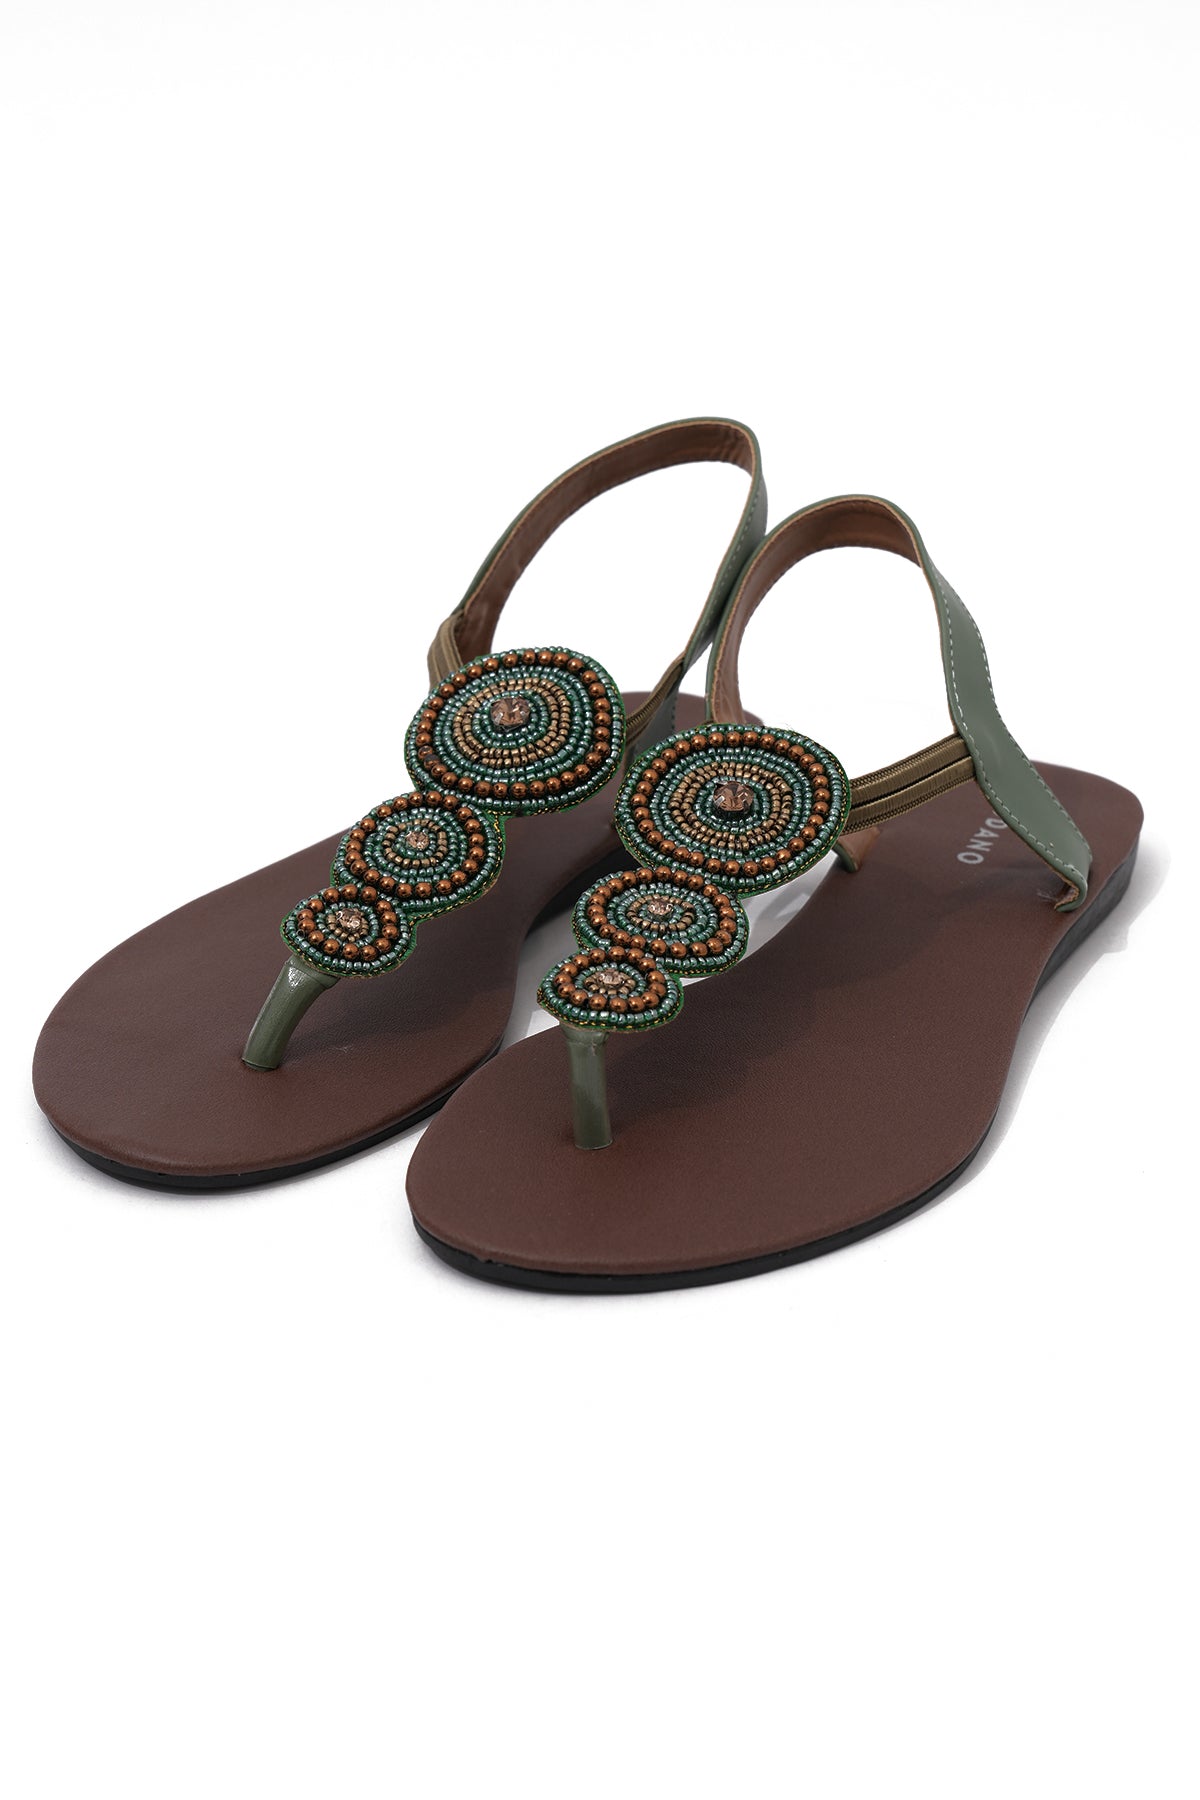 Modano Women's Casual Sandale